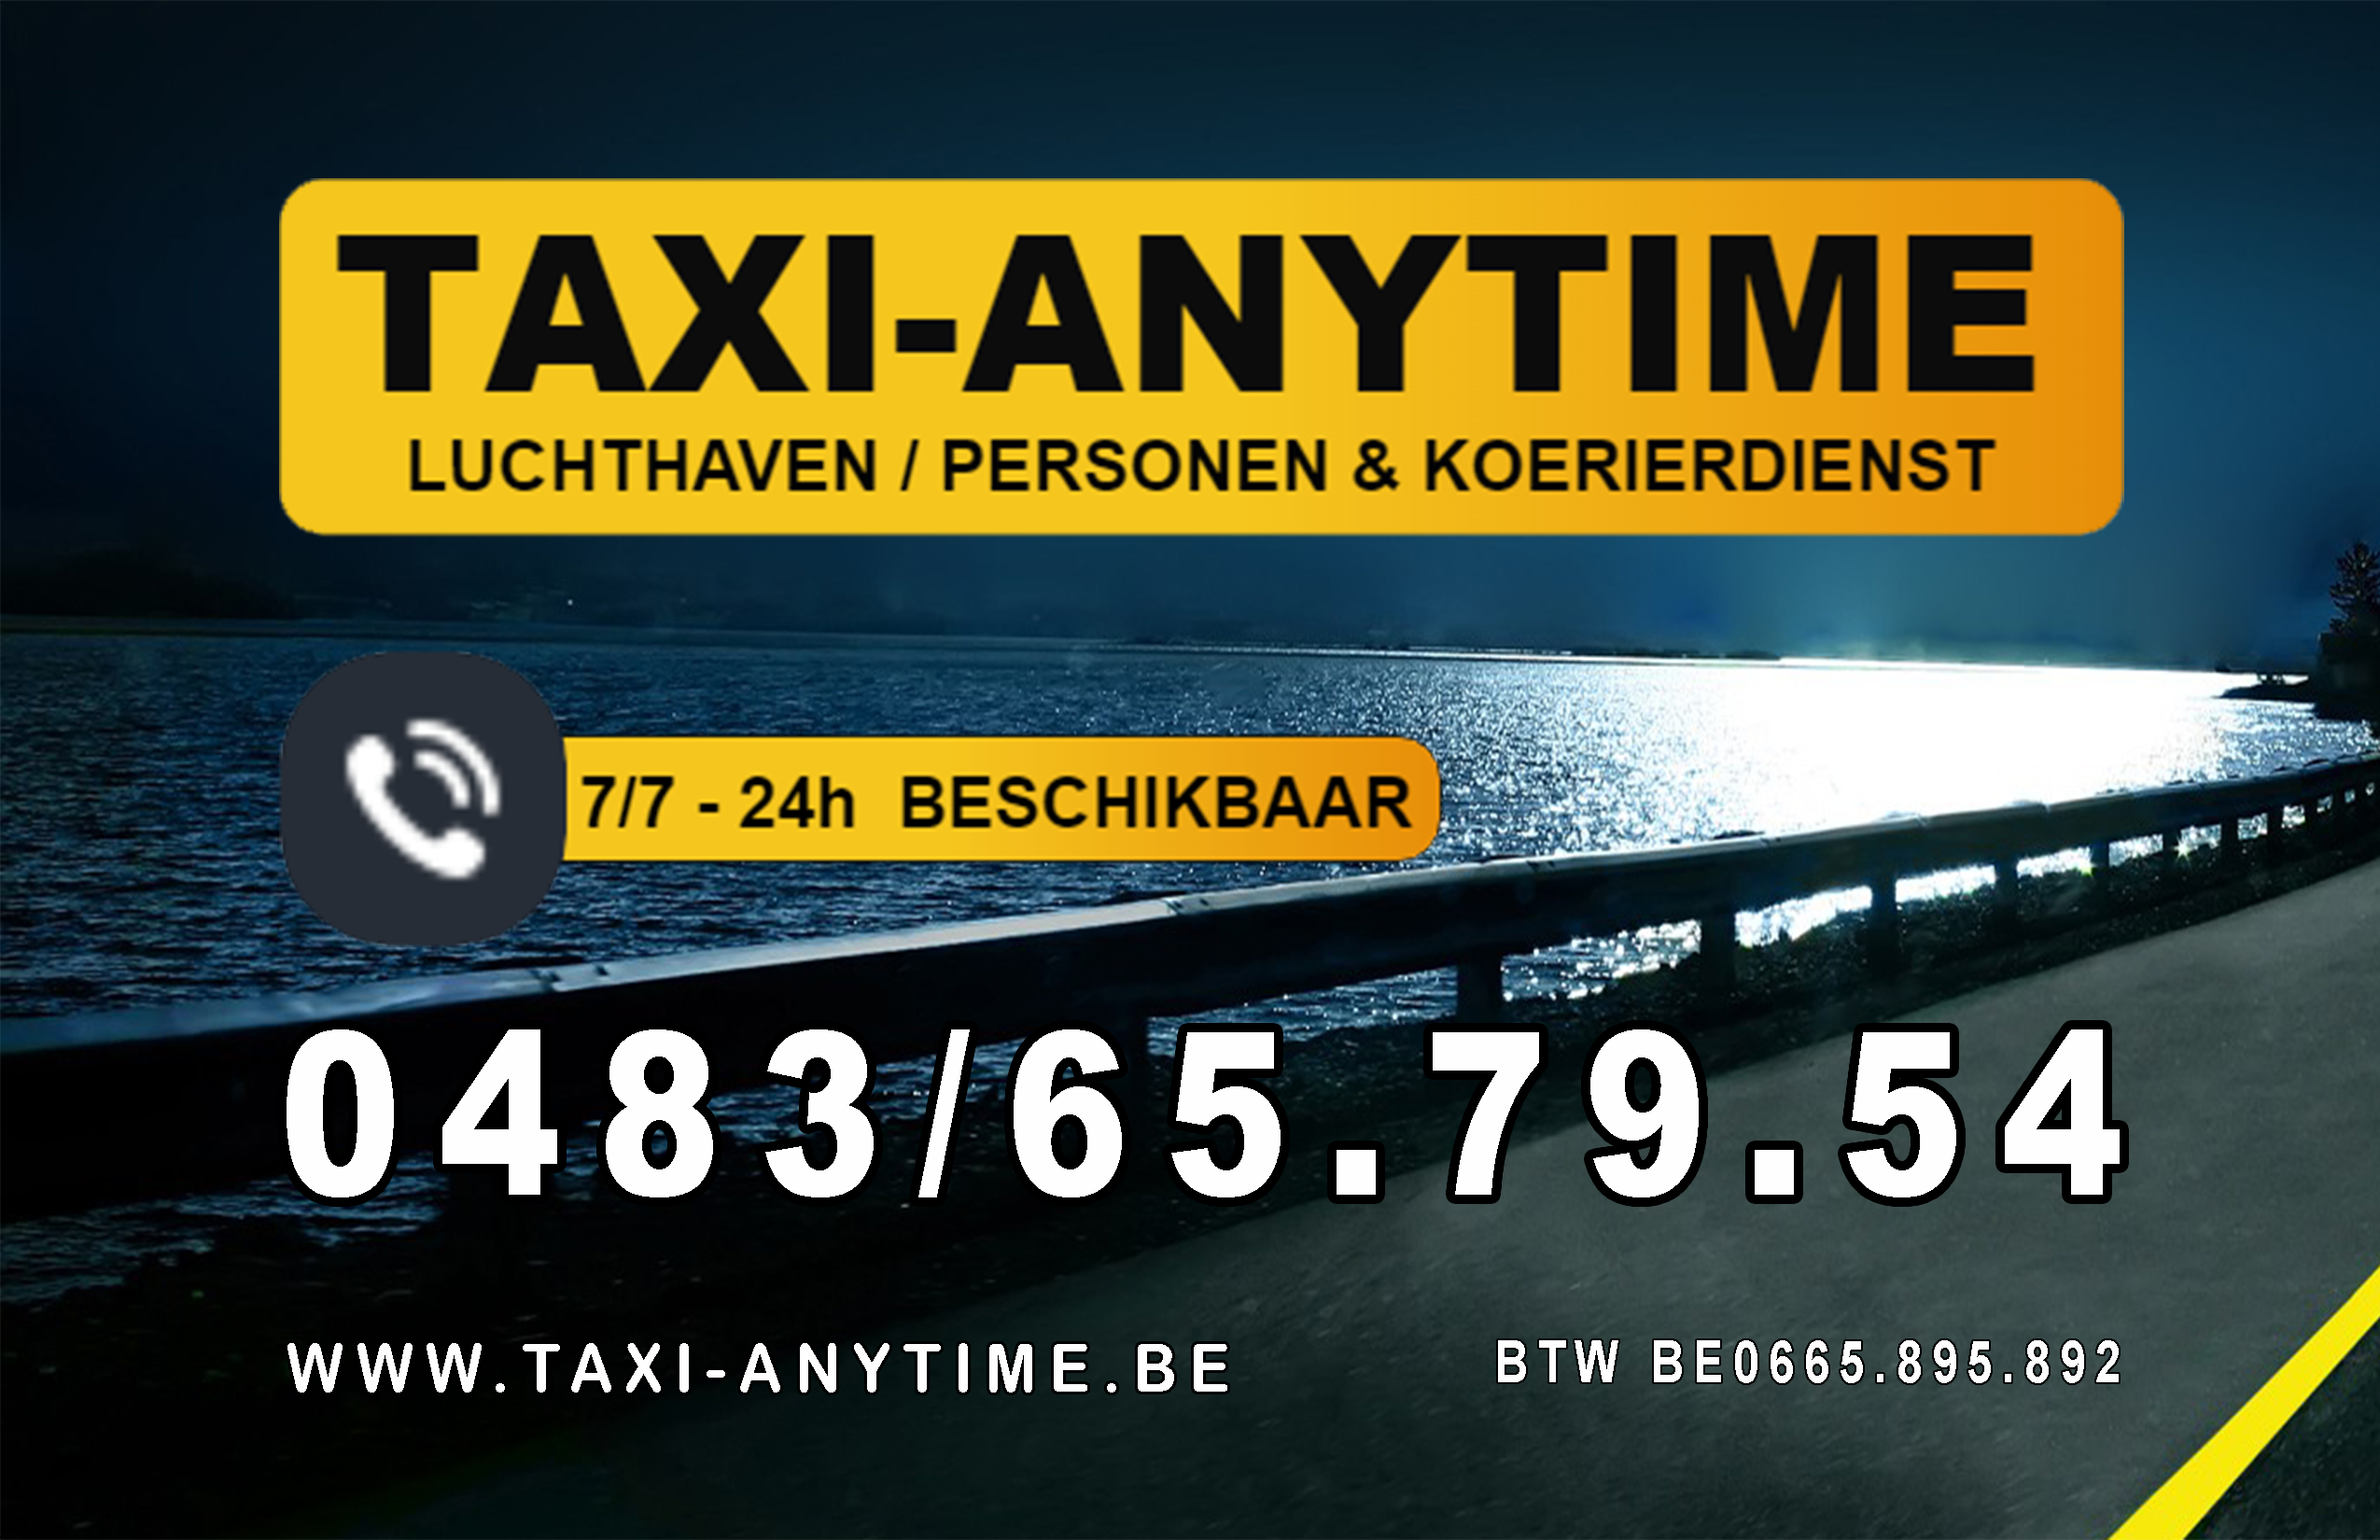 taxibedrijven met luchthavenvervoer Poederlee Taxi-anytime